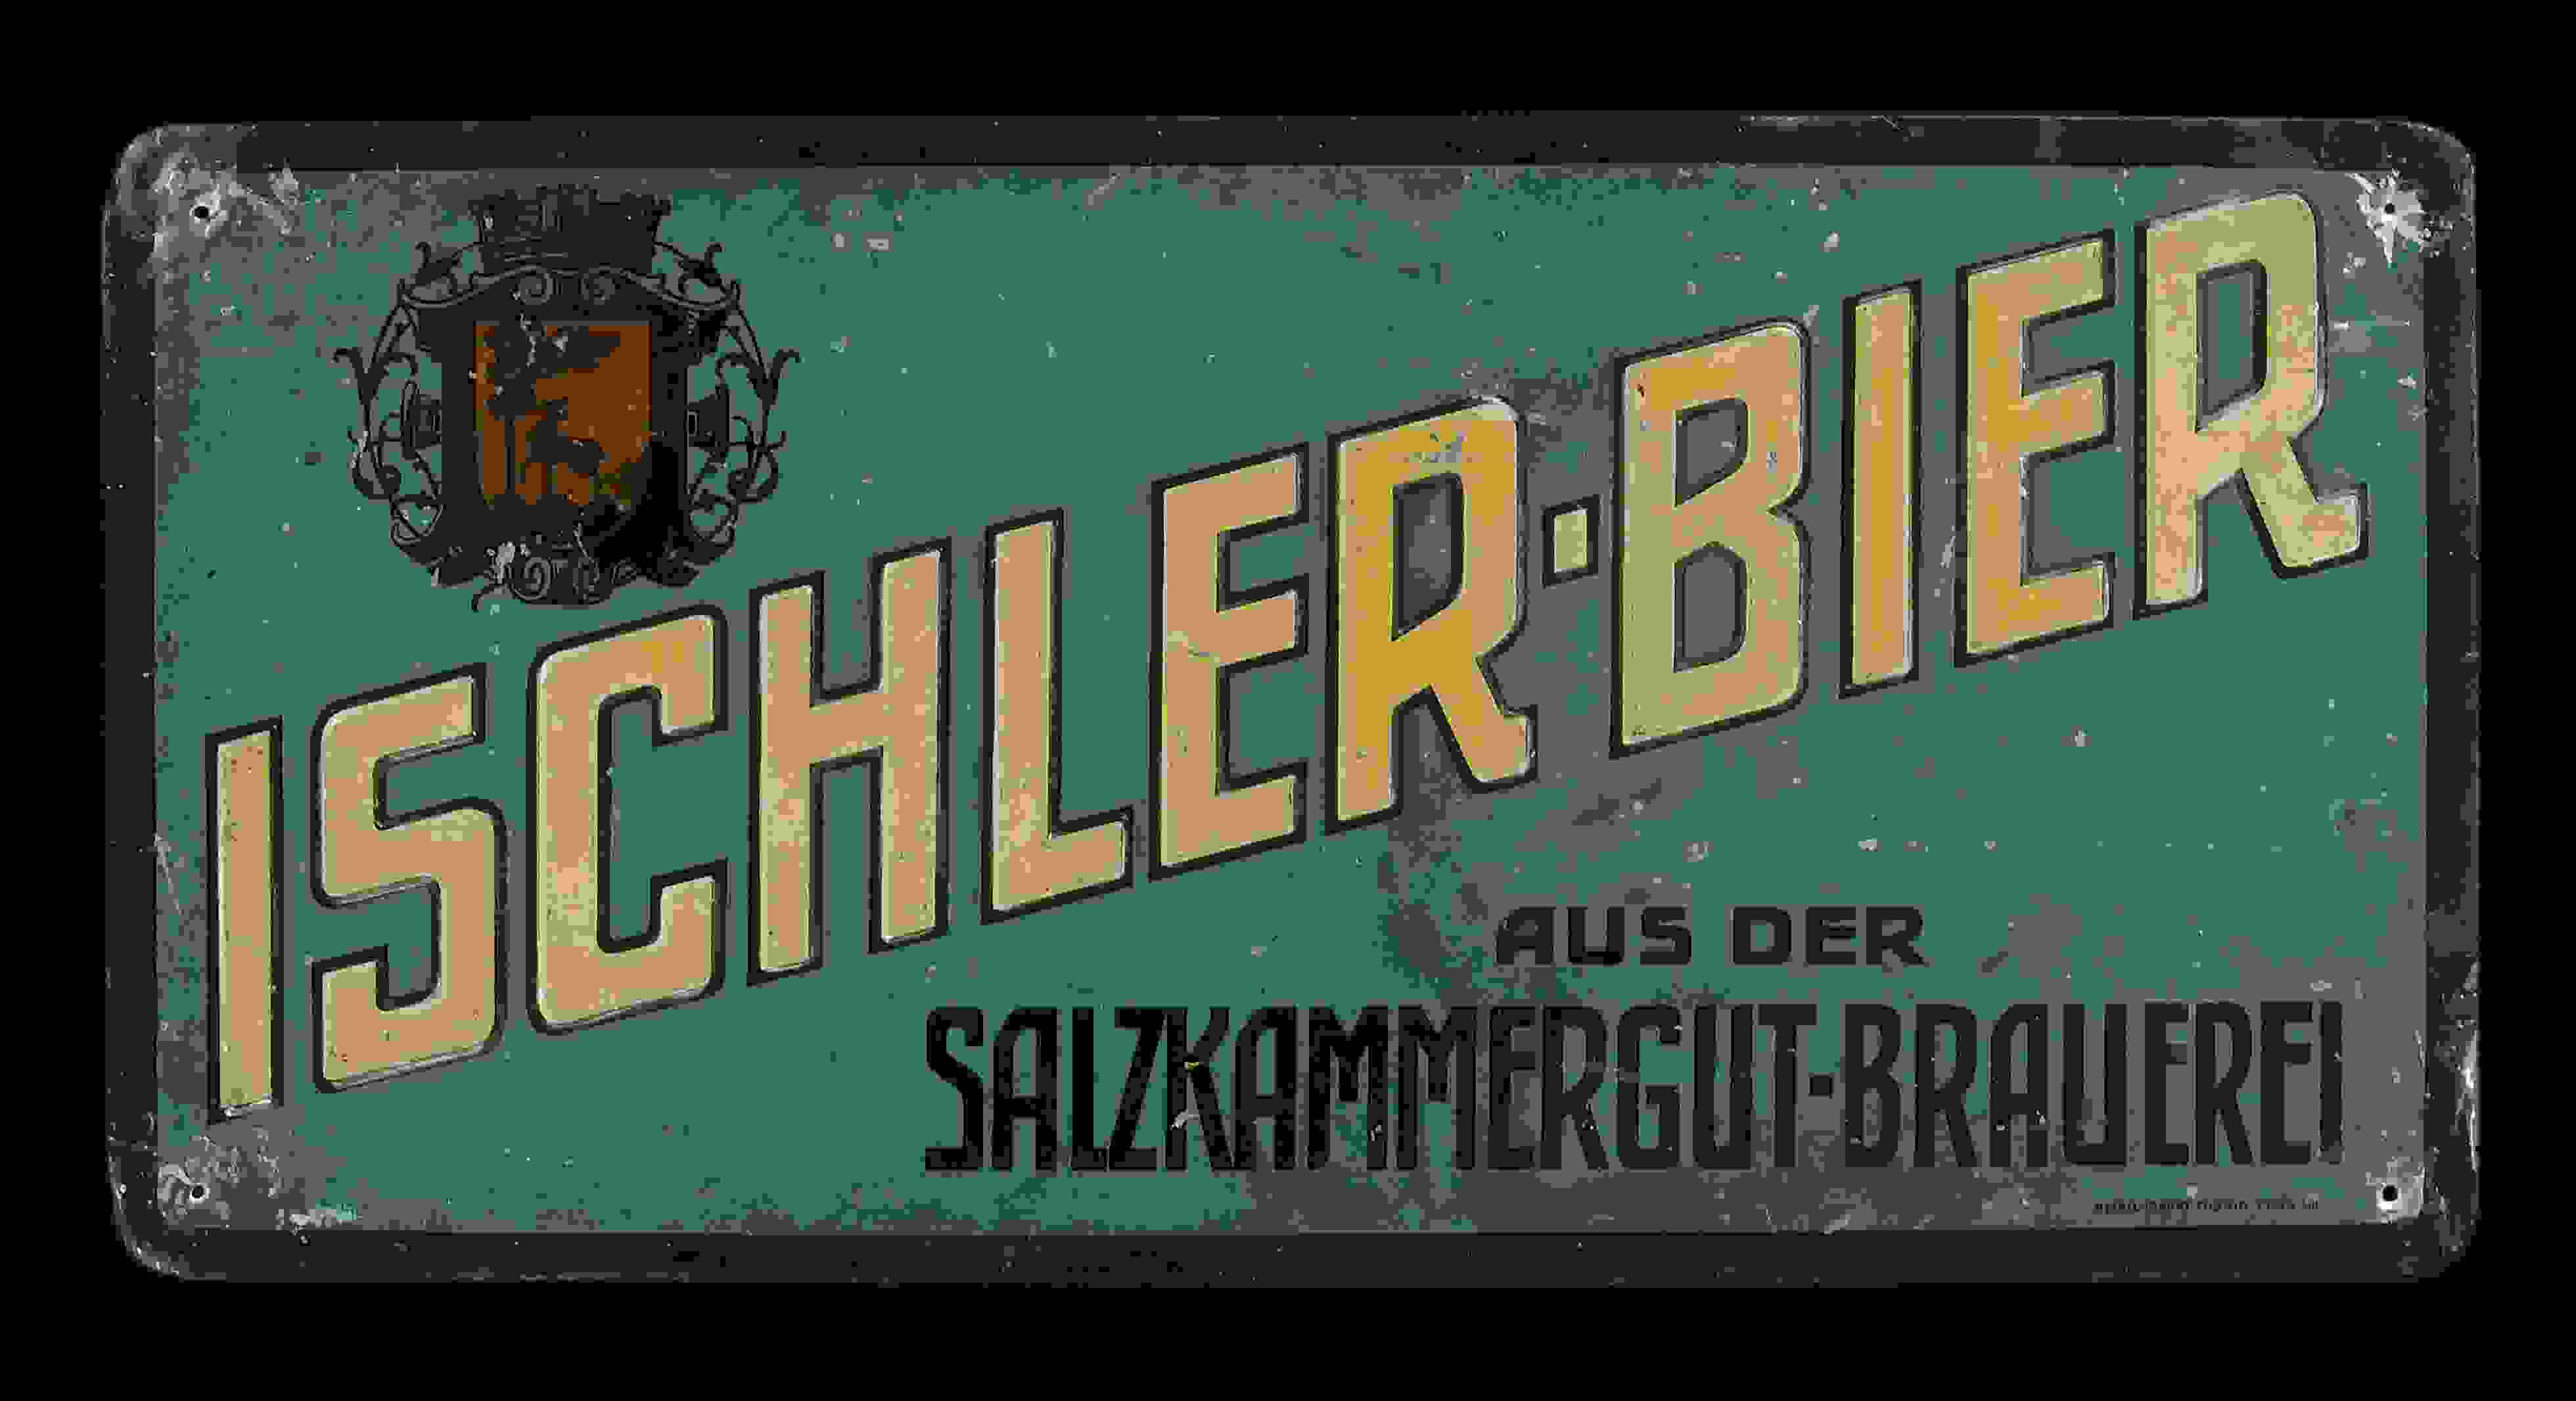 Ischler-Bier aus der Salzkammergut Brauerei 